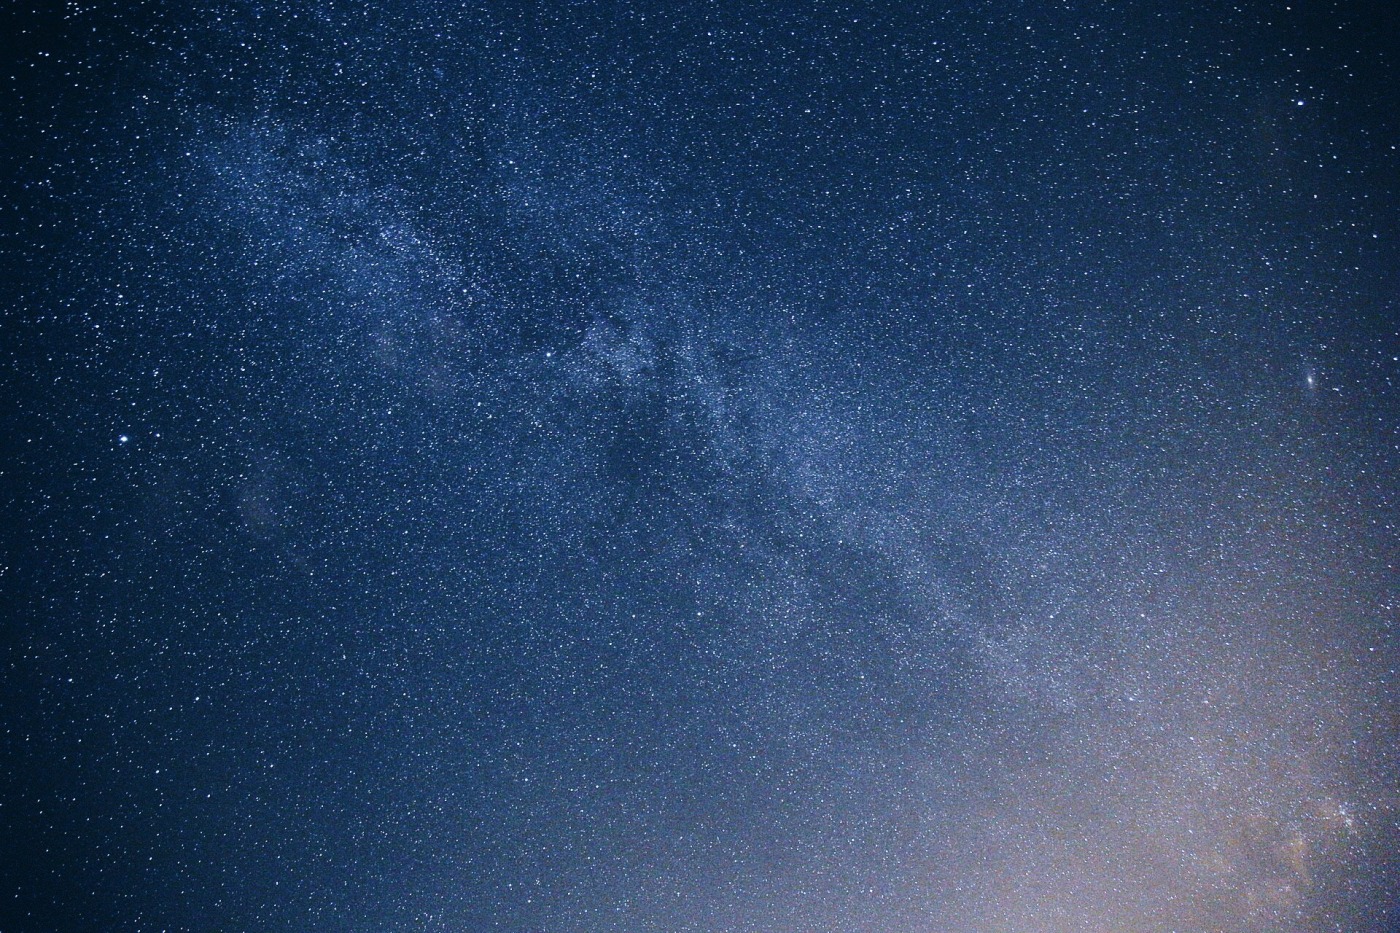 Blick in den Sternenhimmel auf die Milchstra&szlig;e bei Nacht. Von der rechten unteren Ecke kommt ein leichter Lichtschein.